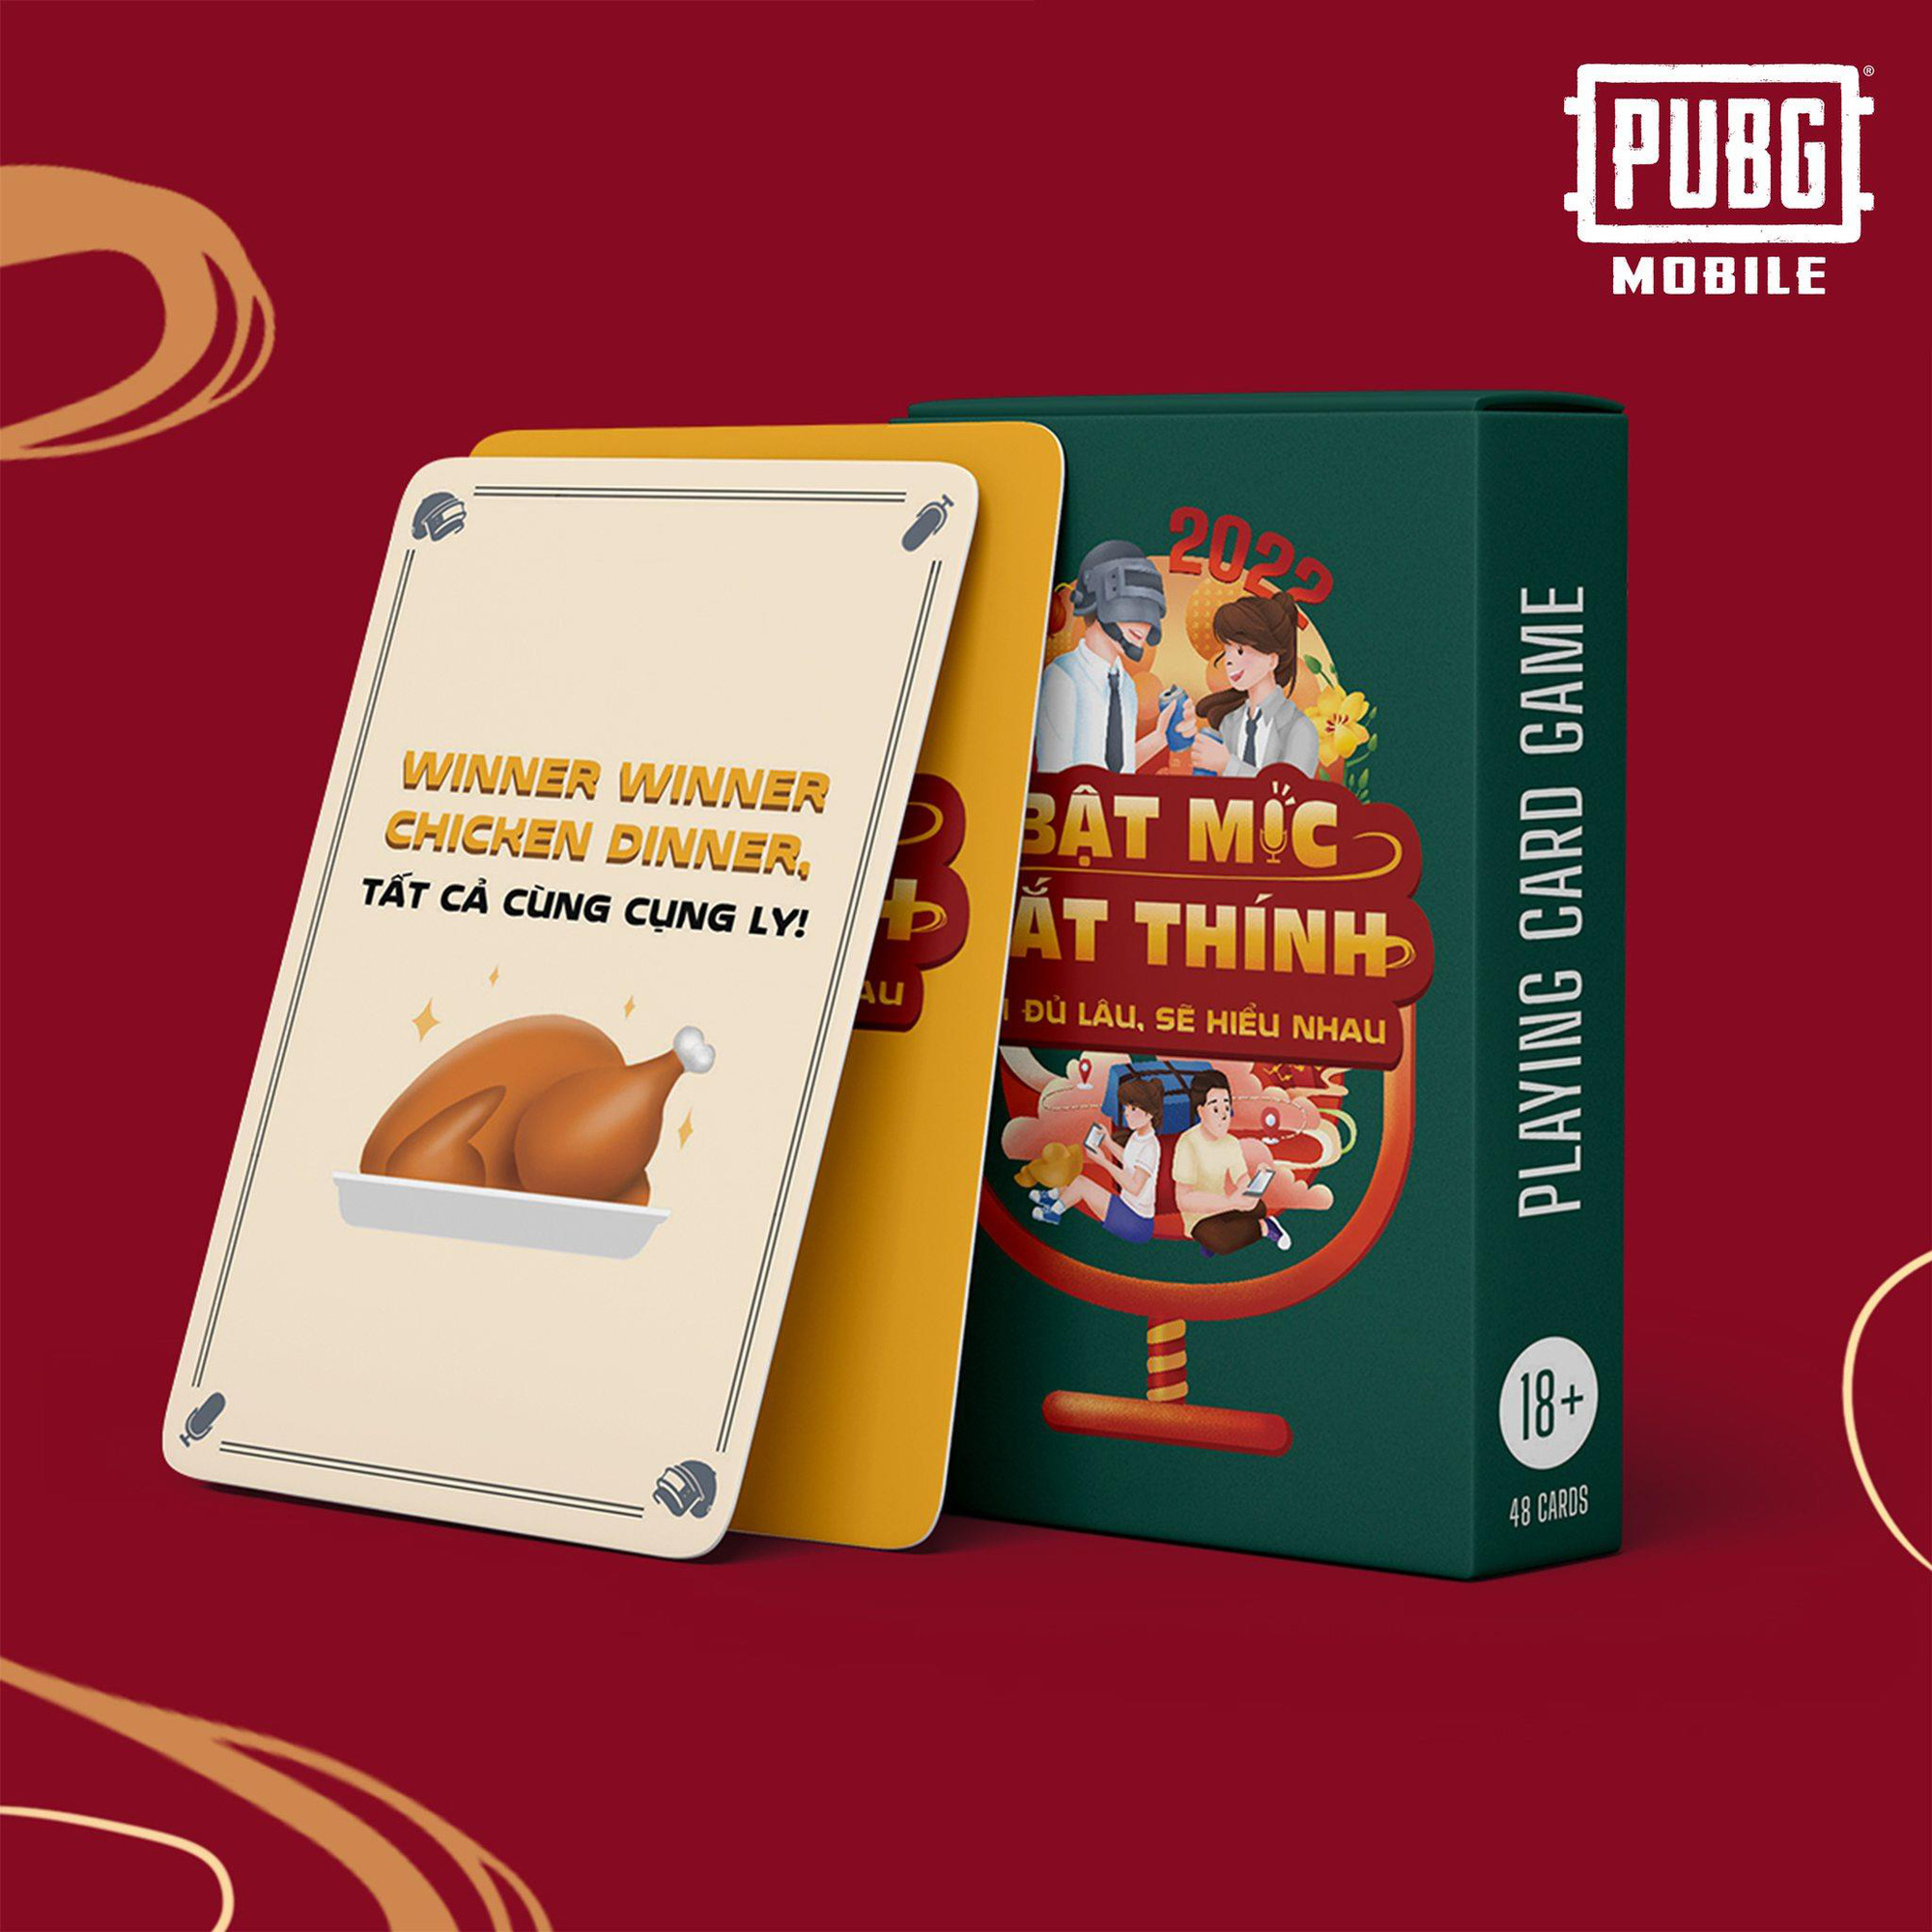 PUBG MOBILE ra mắt bộ boardgame đặc sắc, gây sốt giới trẻ trong dịp Tết Nhâm Dần - Ảnh 2.